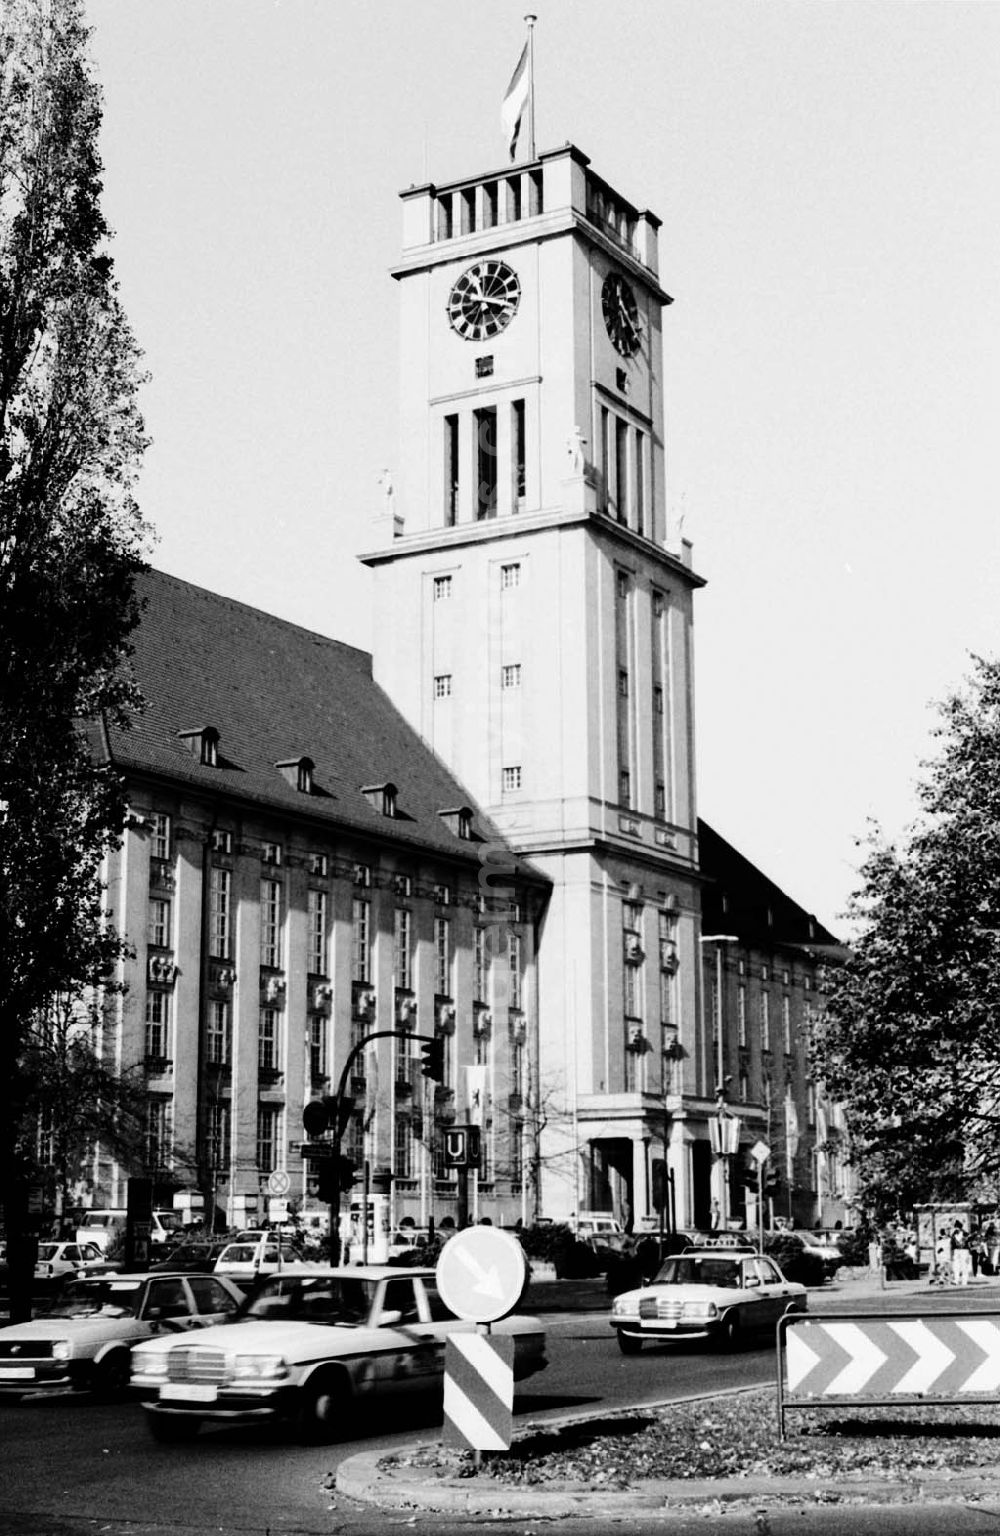 Berlin - Schöneberg: Freiheitsglocke im Rathaus Schöneberg